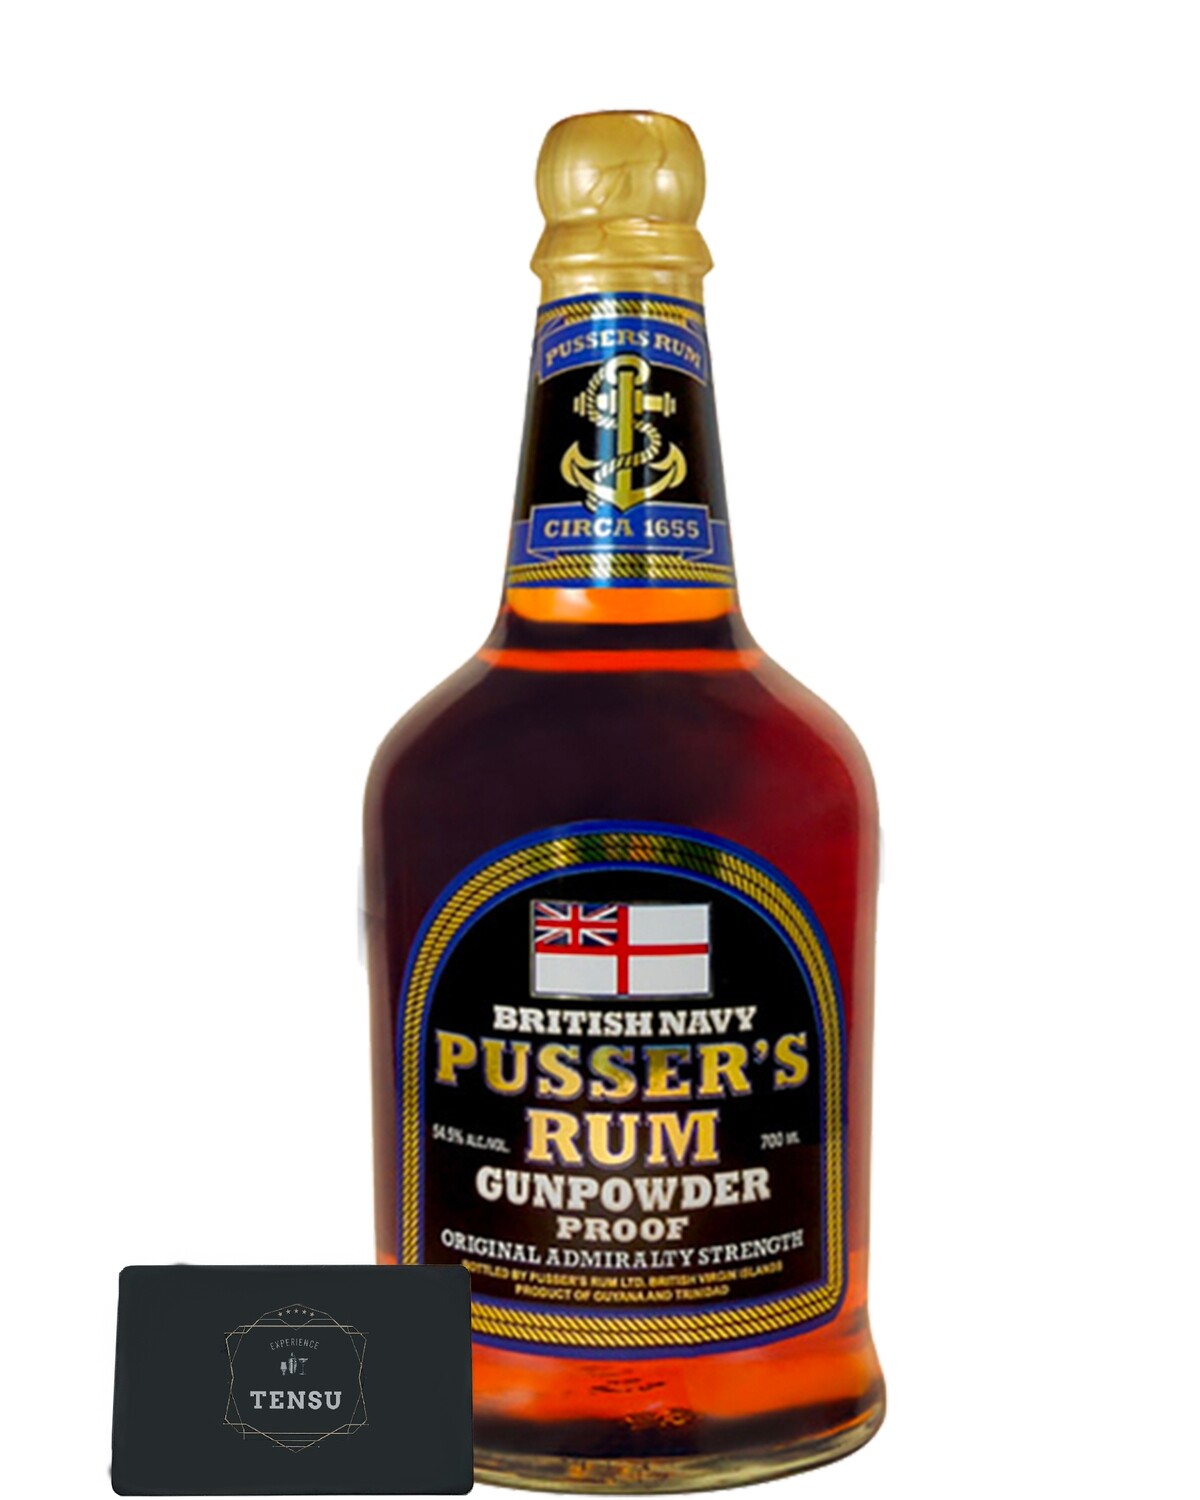 Pusser's Rum Gunpowder Proof 54.5 "OB"